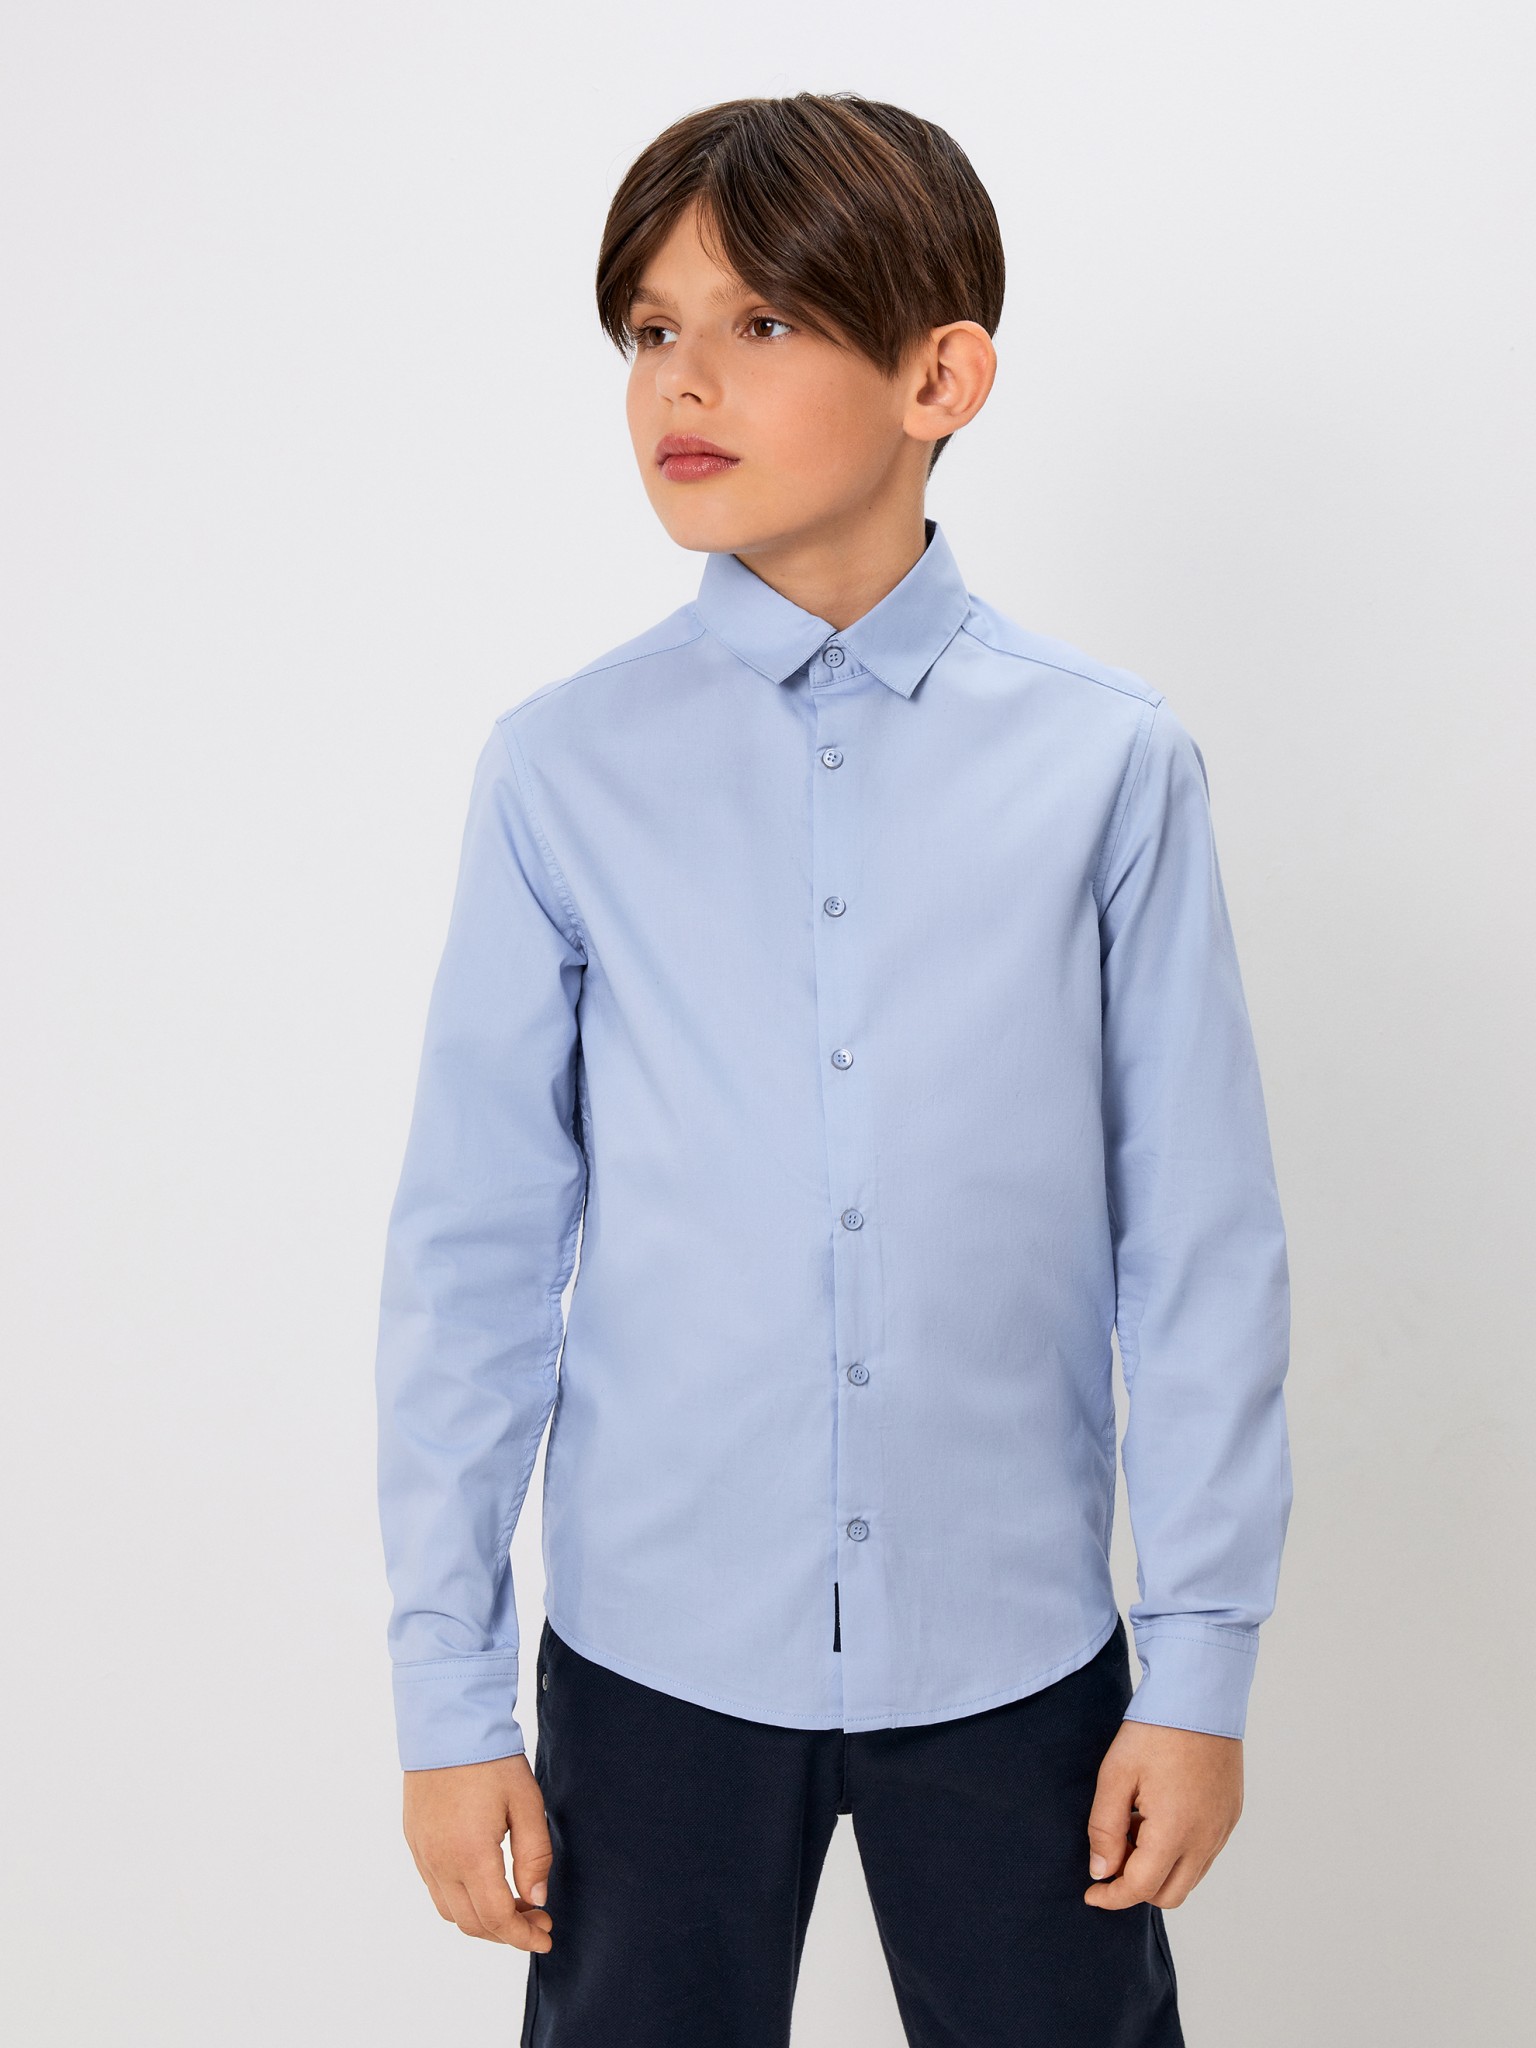 Рубашка детская ACOOLA 20140280145 цвет голубой размер 164